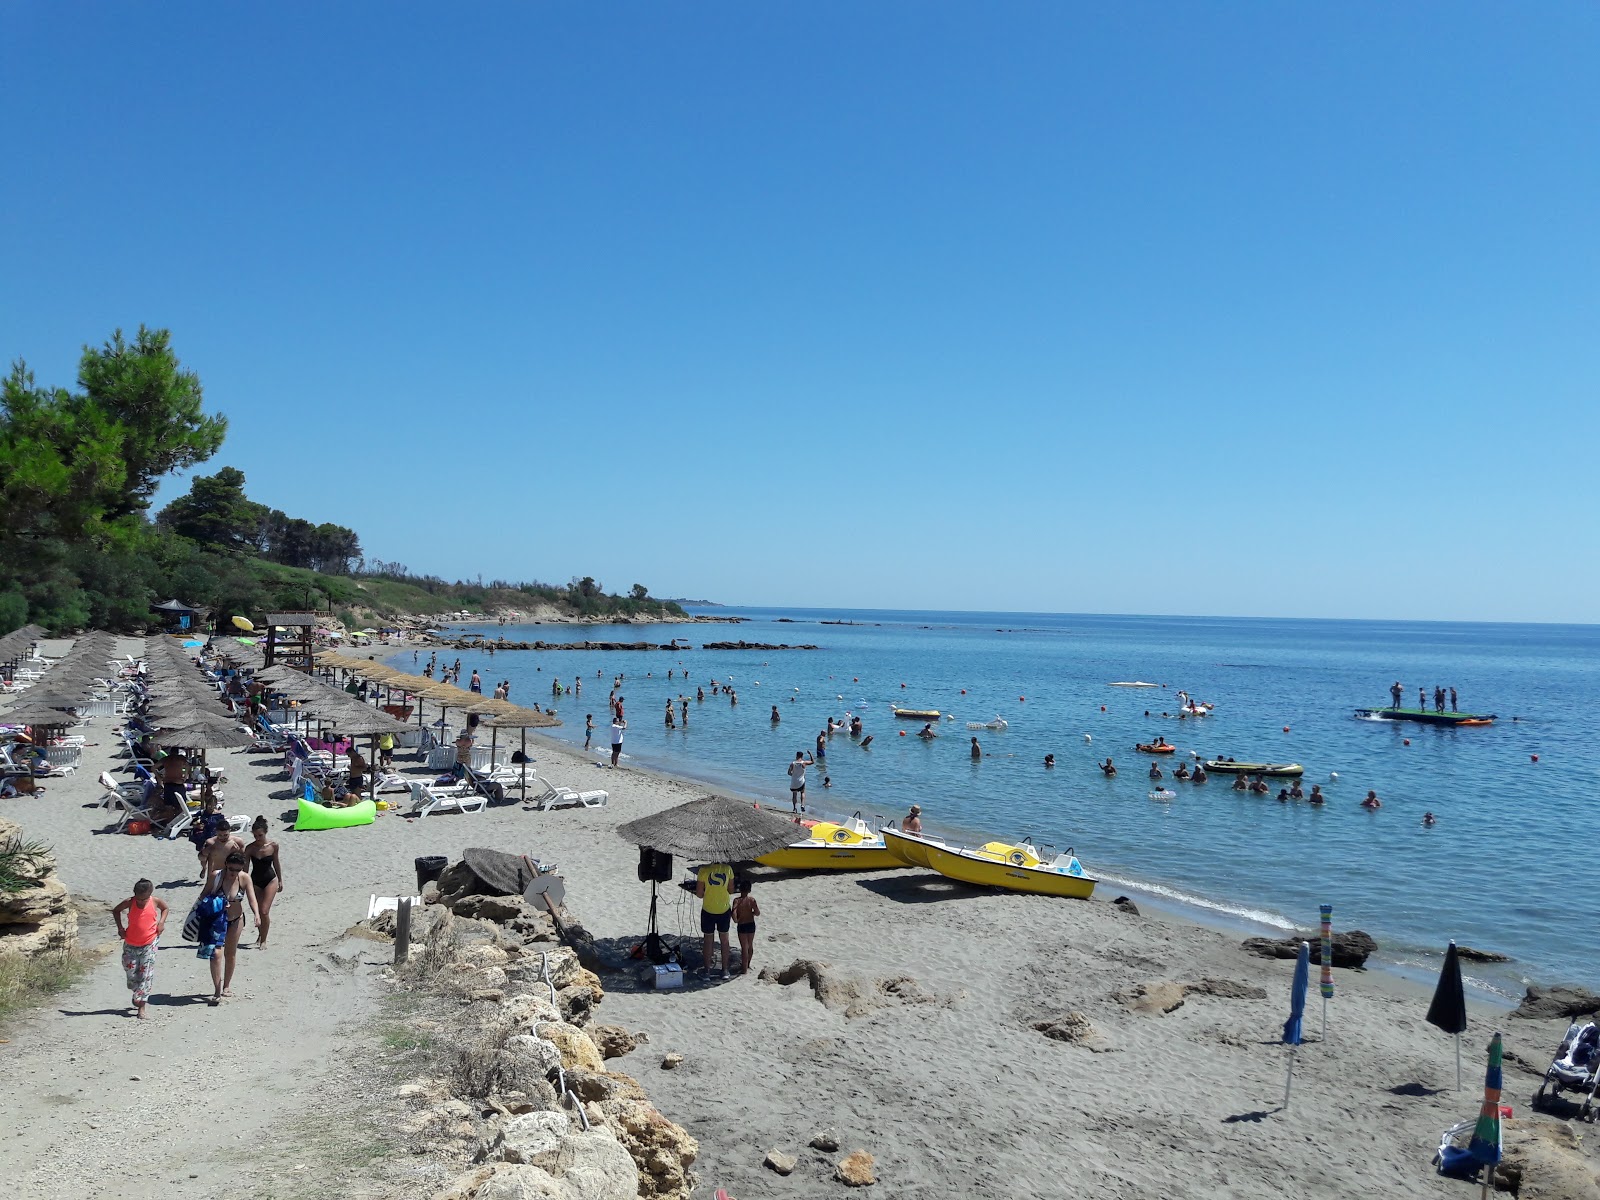 Villaggio Camping Marinella'in fotoğrafı plaj tatil beldesi alanı